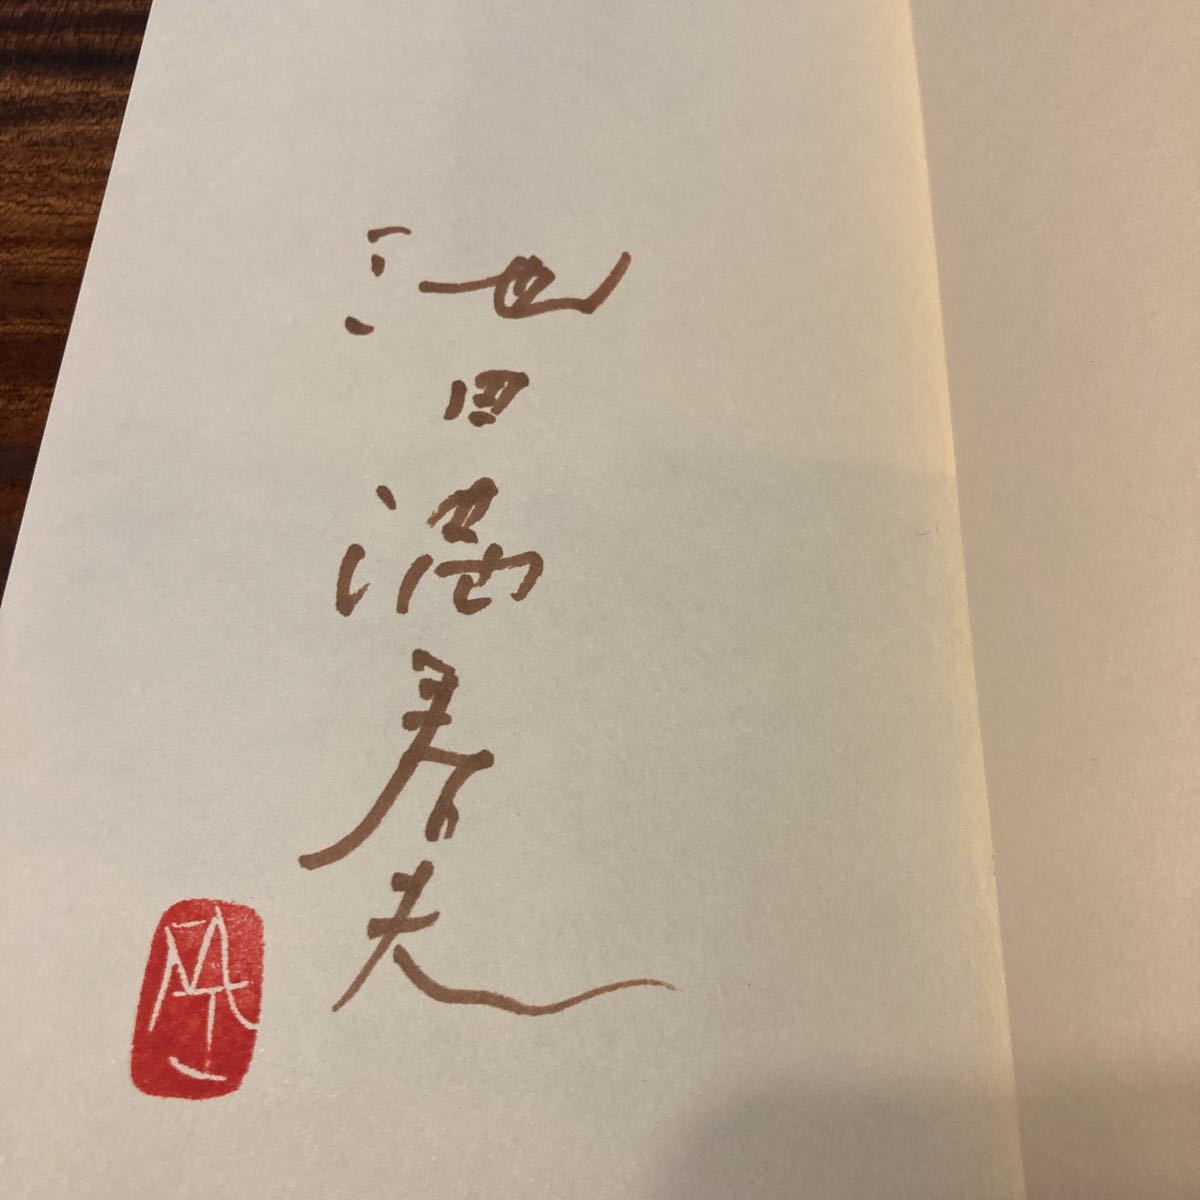  родители ... к письмо Ikeda Masuo Shinchosha 1980 год первая версия obi подпись ( автограф ) ввод 